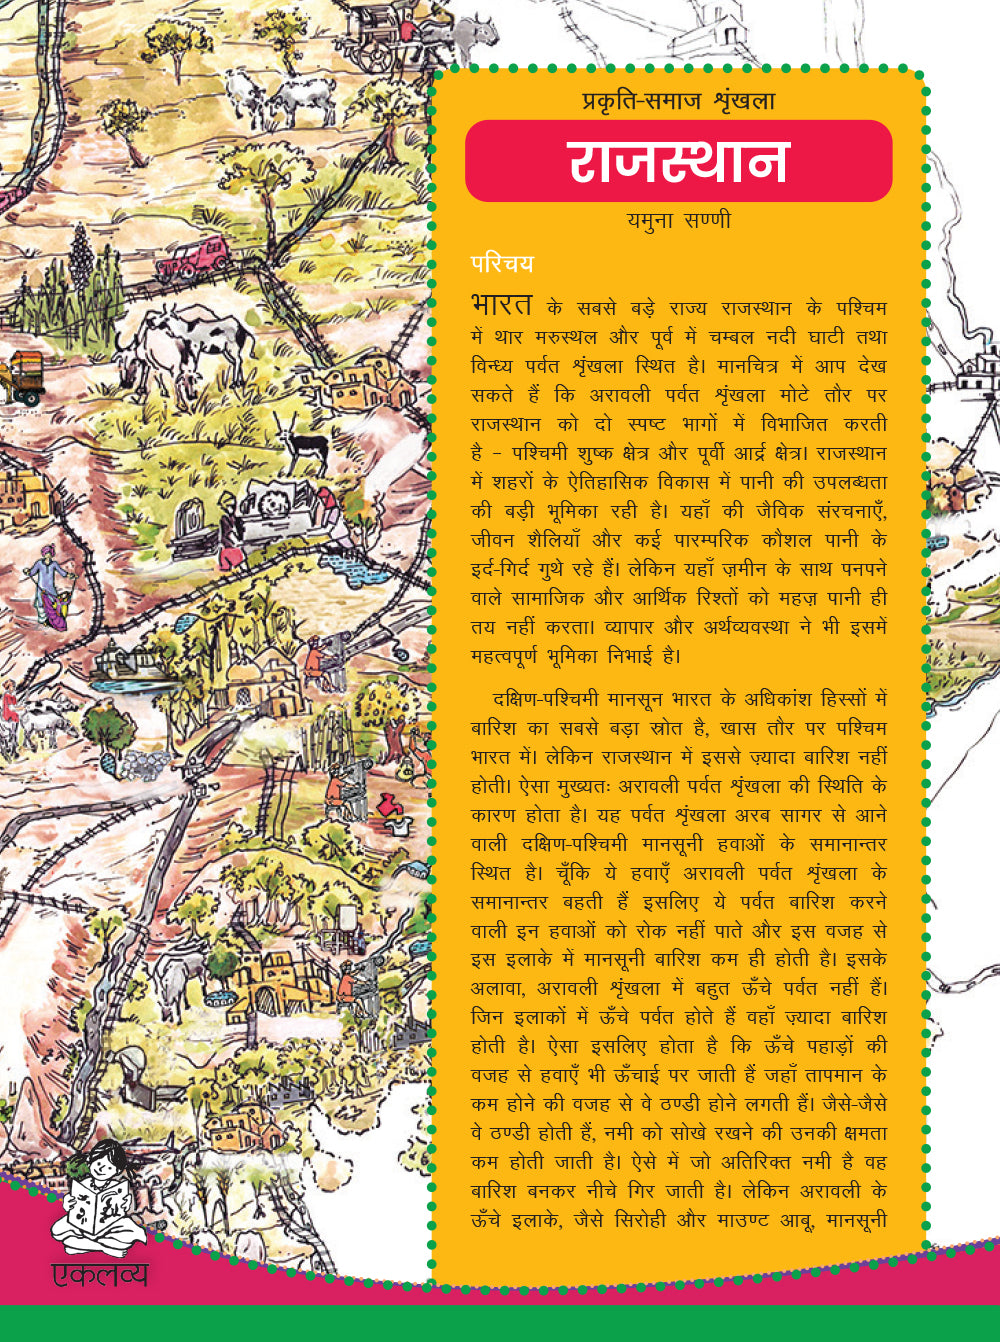 Prakriti-Samaj Shrinkhala: Rajasthan